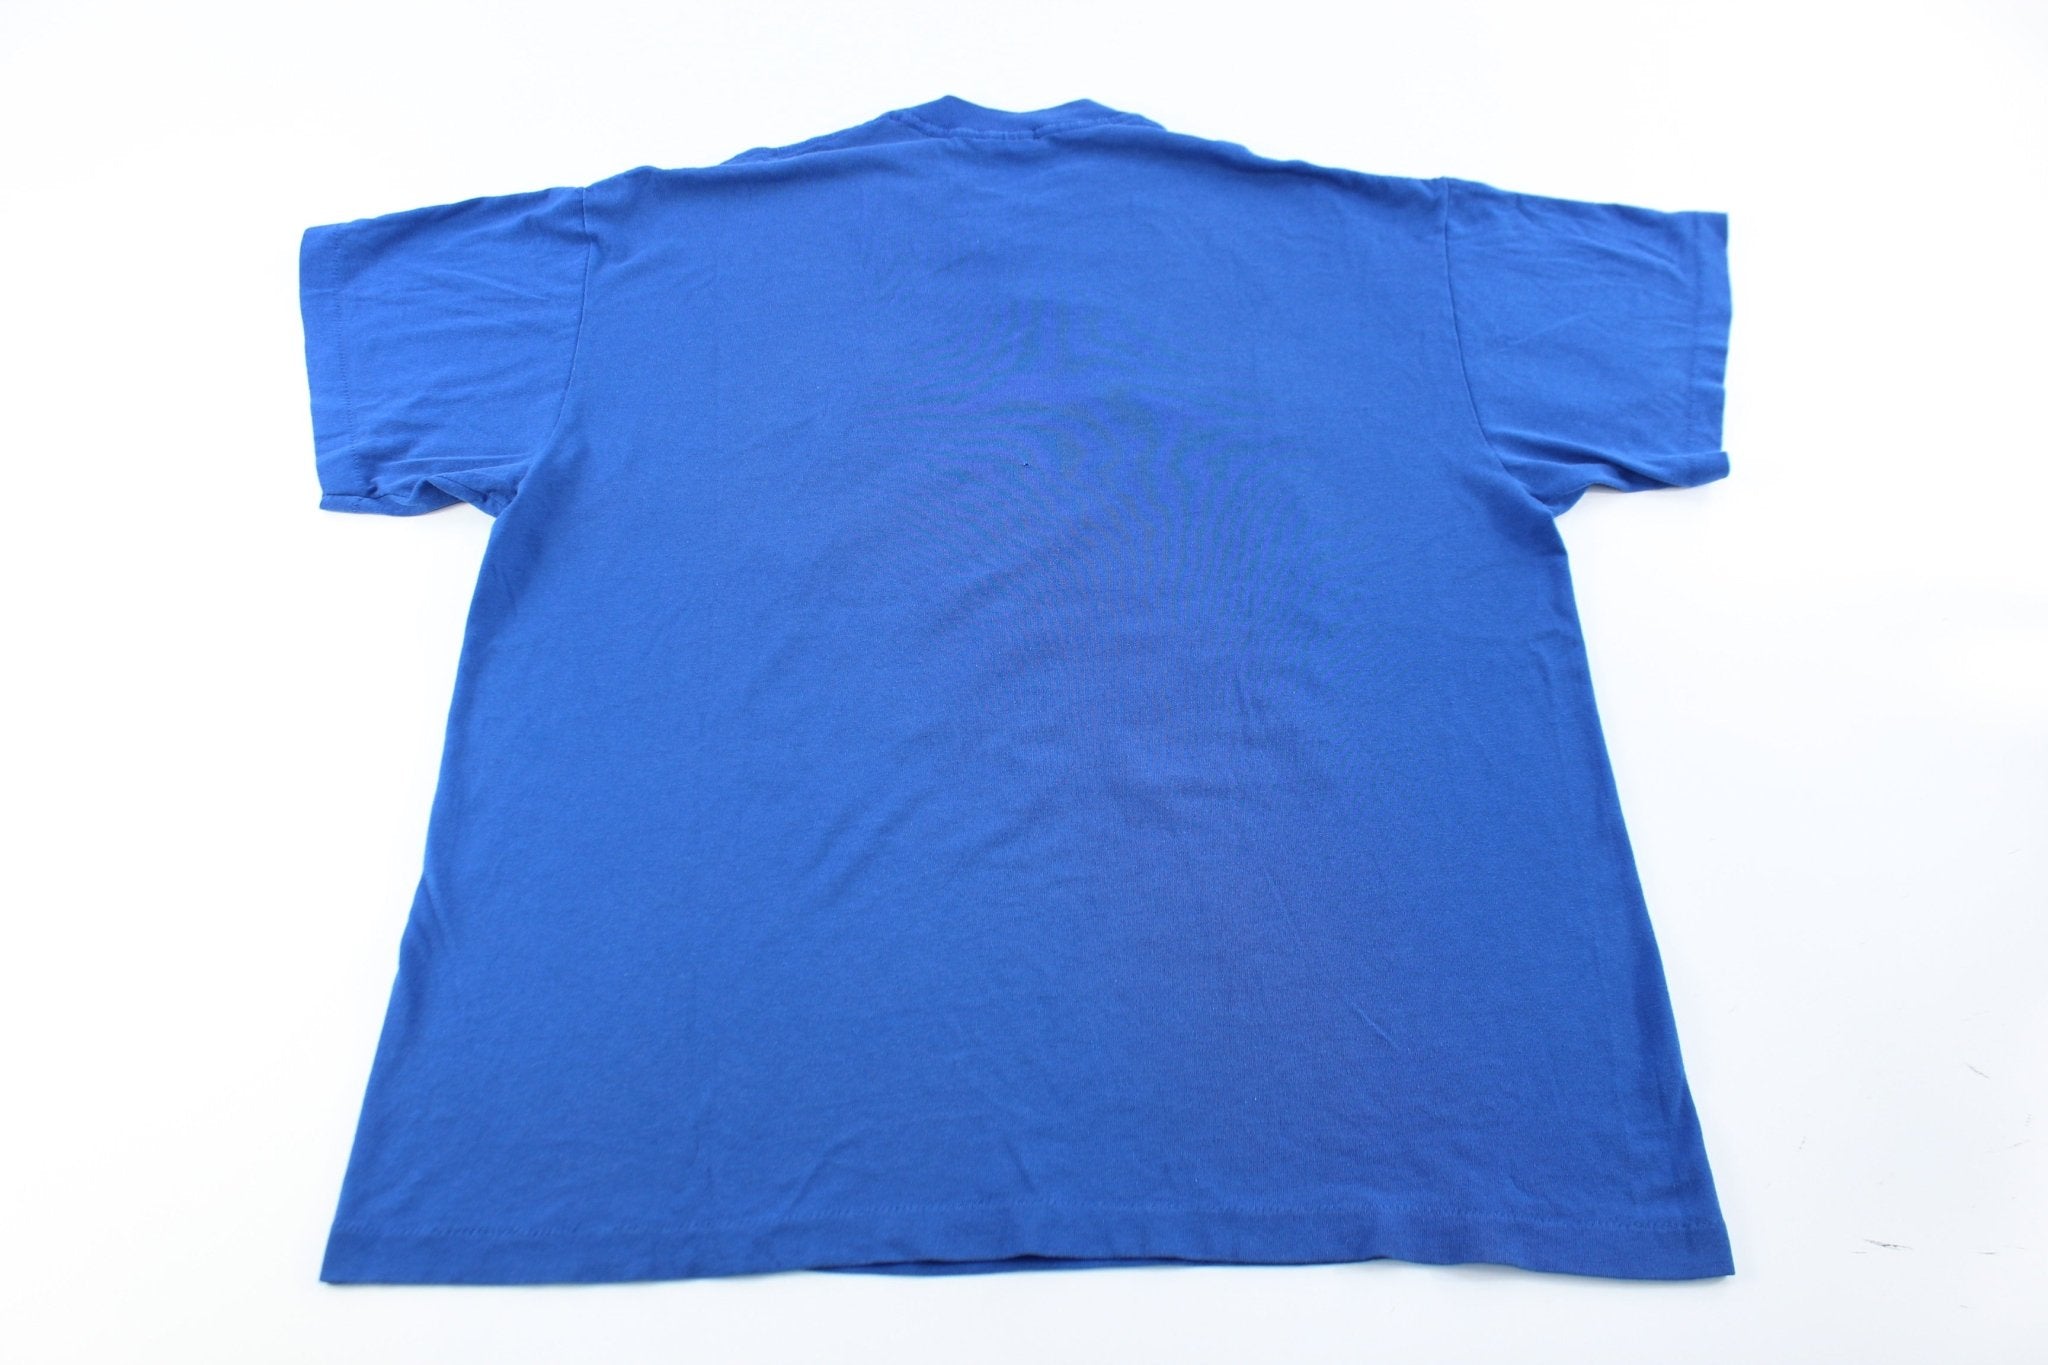 90's Duke University Blue Devils Graphic T-Shirt - ThriftedThreads.com